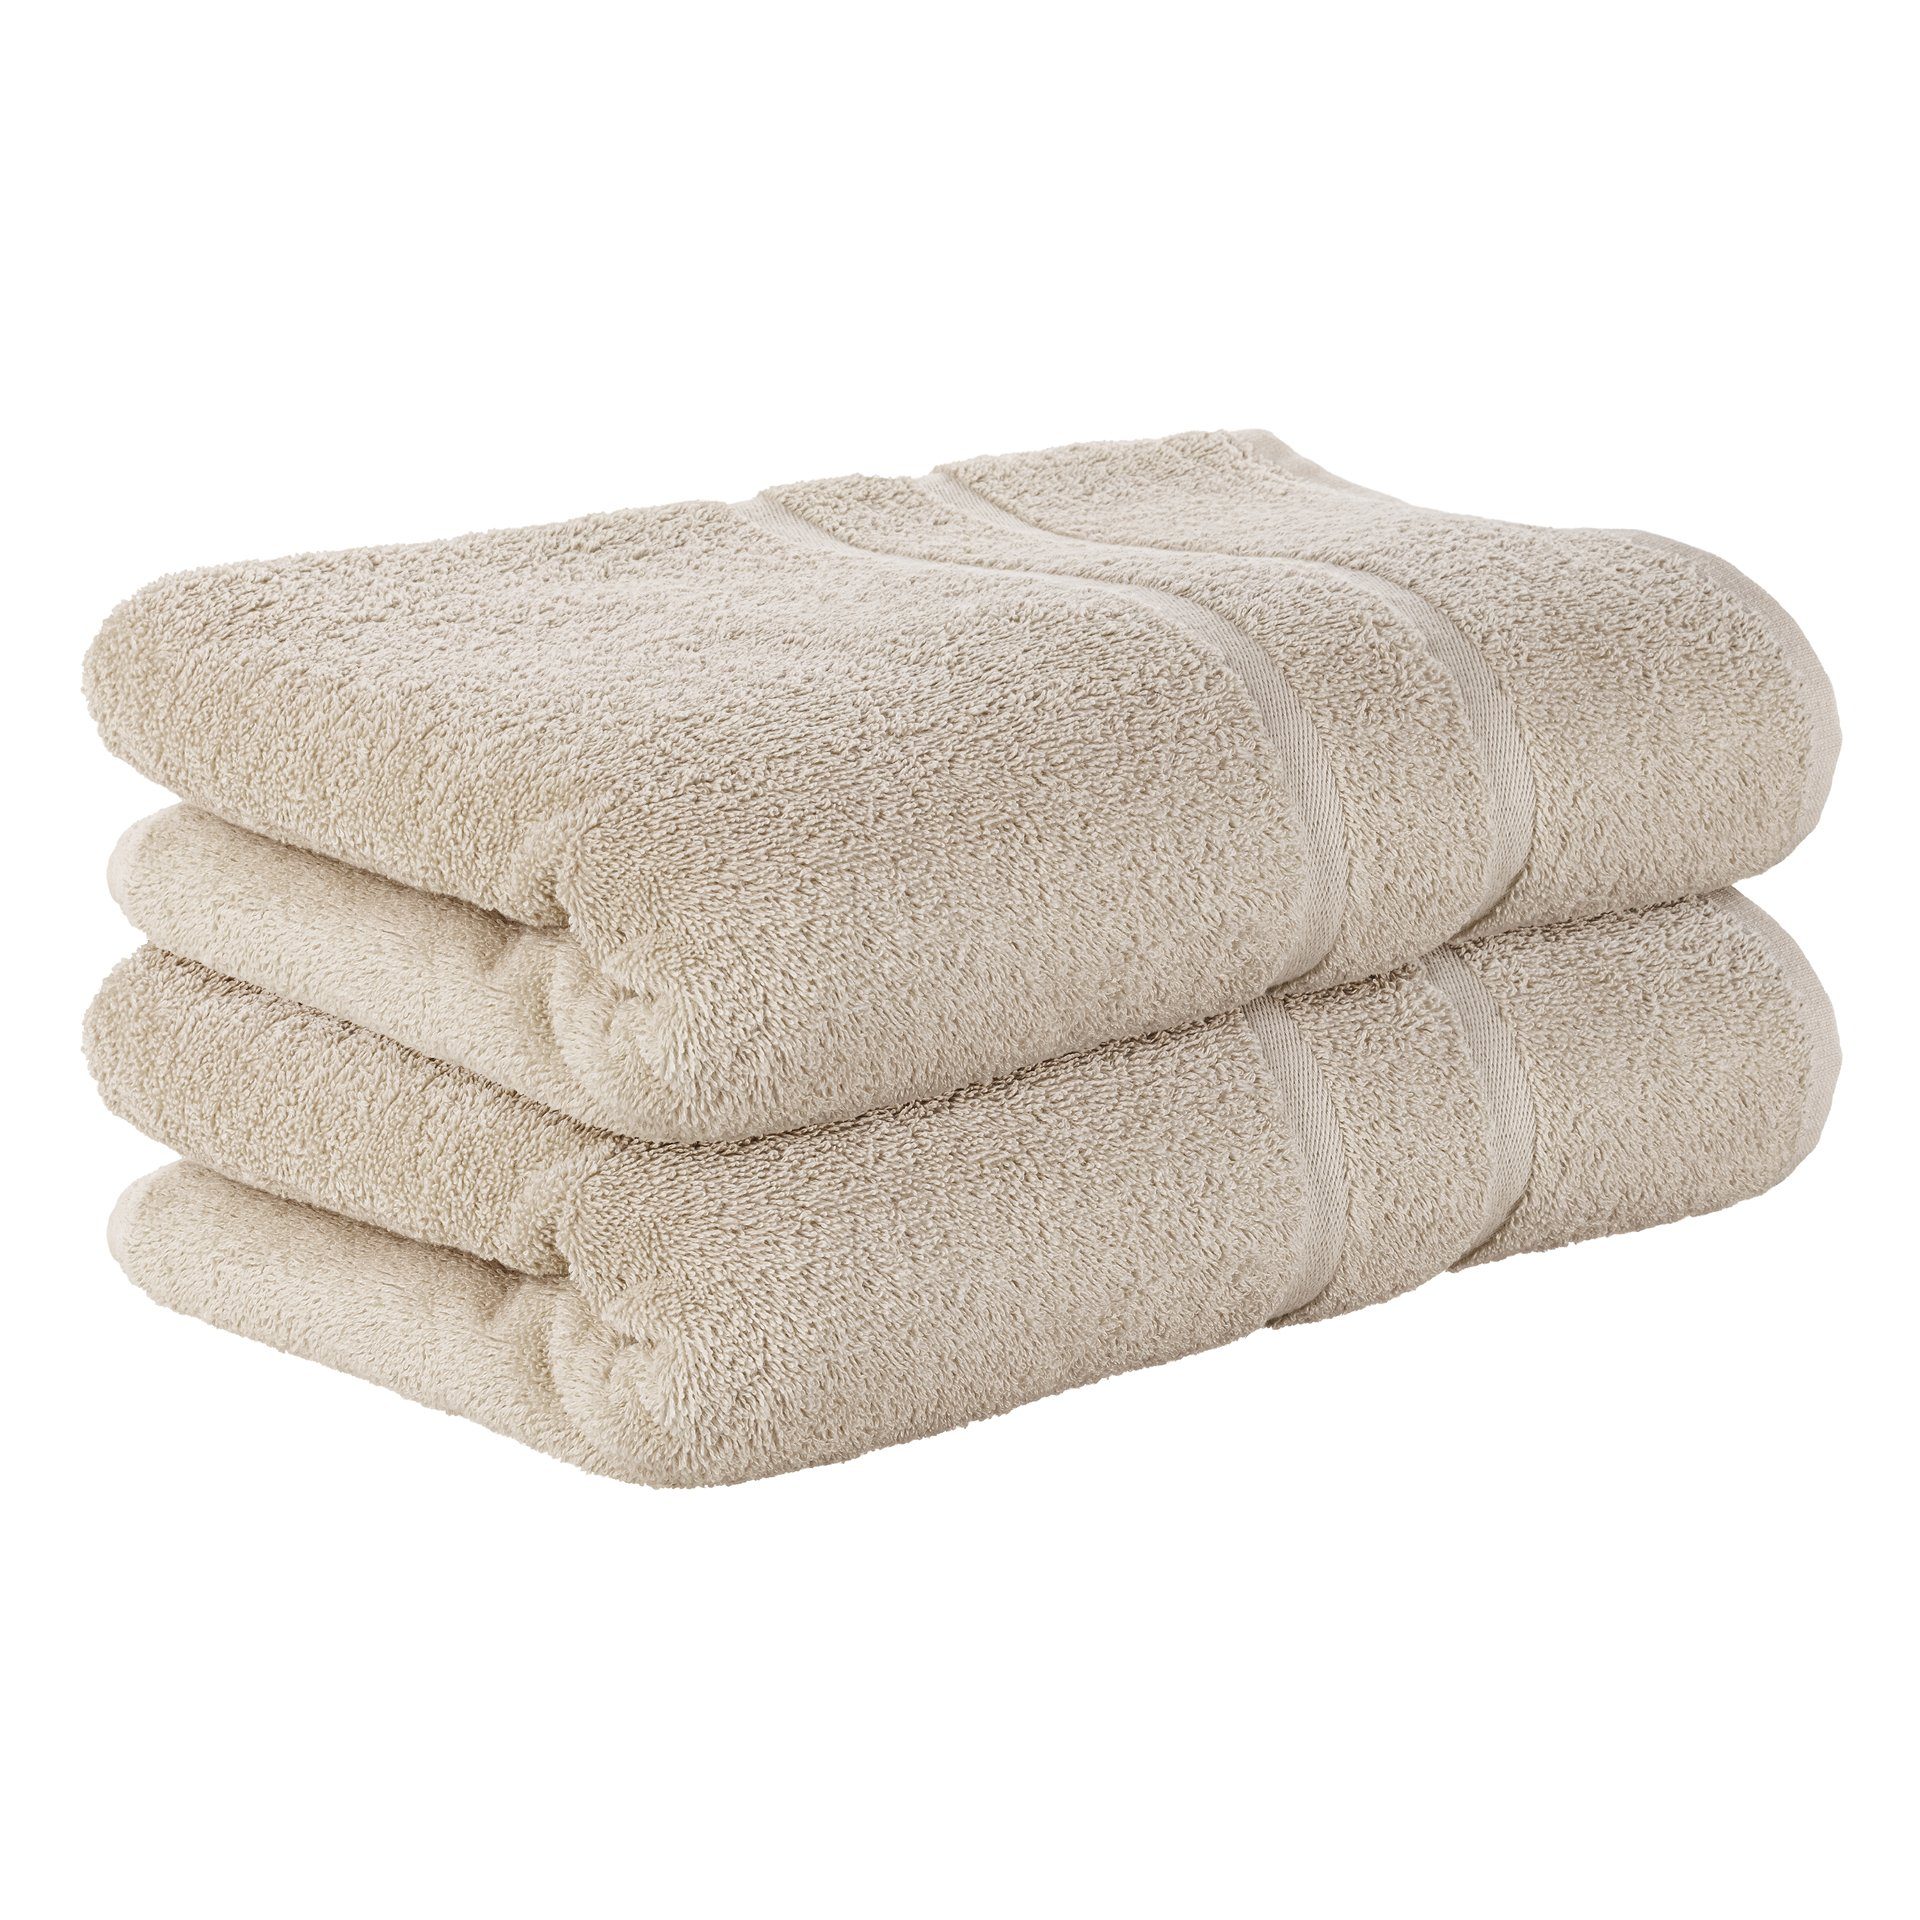 StickandShine Handtuch 2er Set Premium Frottee Handtuch 50x100 cm in 500g/m² aus 100% Baumwolle (2 Stück), 100% Baumwolle 500GSM Frottee Sand